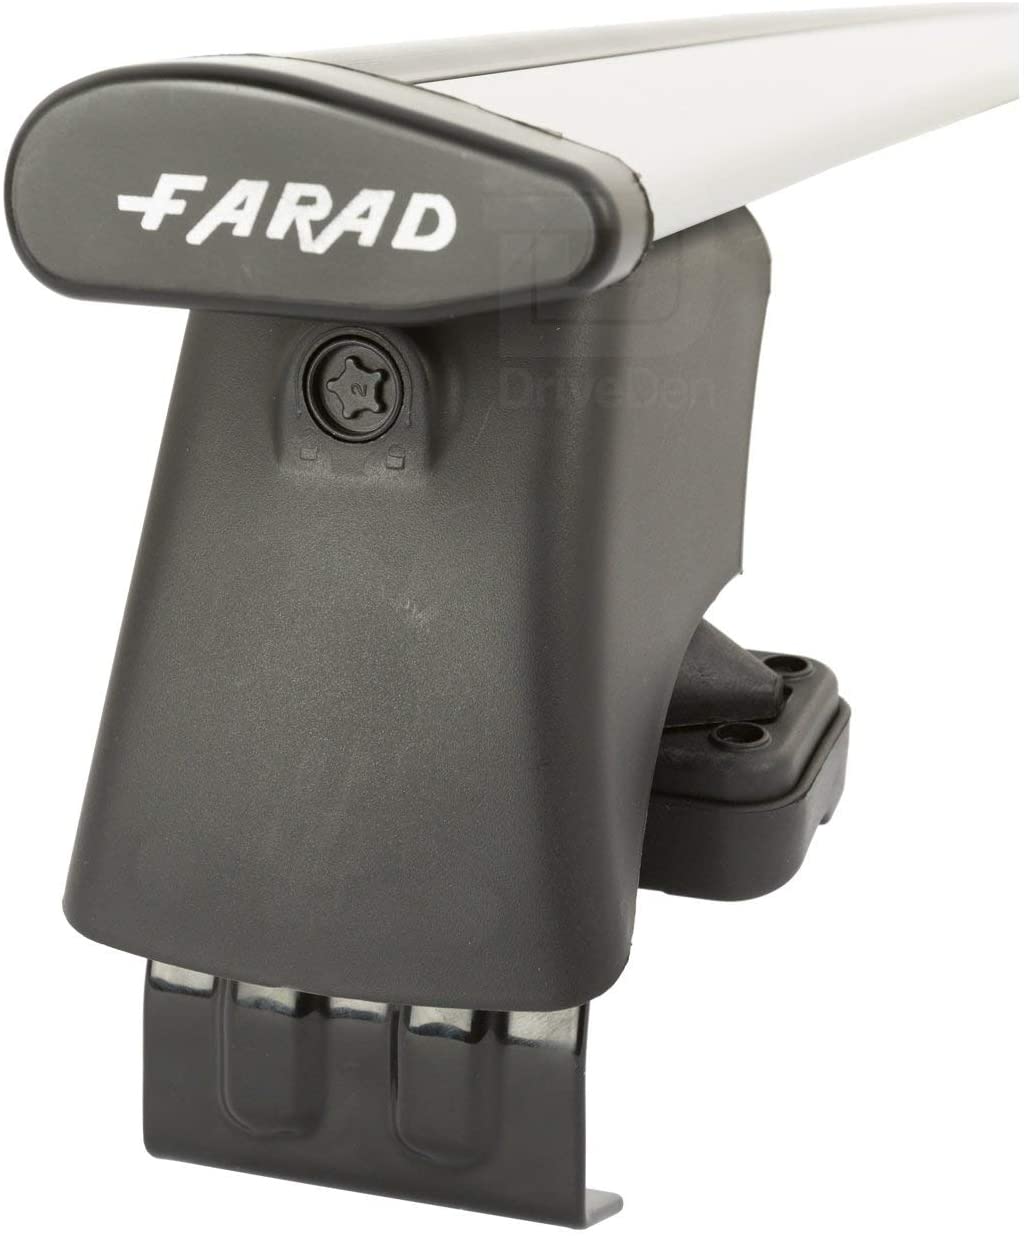 FARAD-Kit H2 per barre portatutto - Audi A3 Sportback 2013-2020 (senza corrimano)